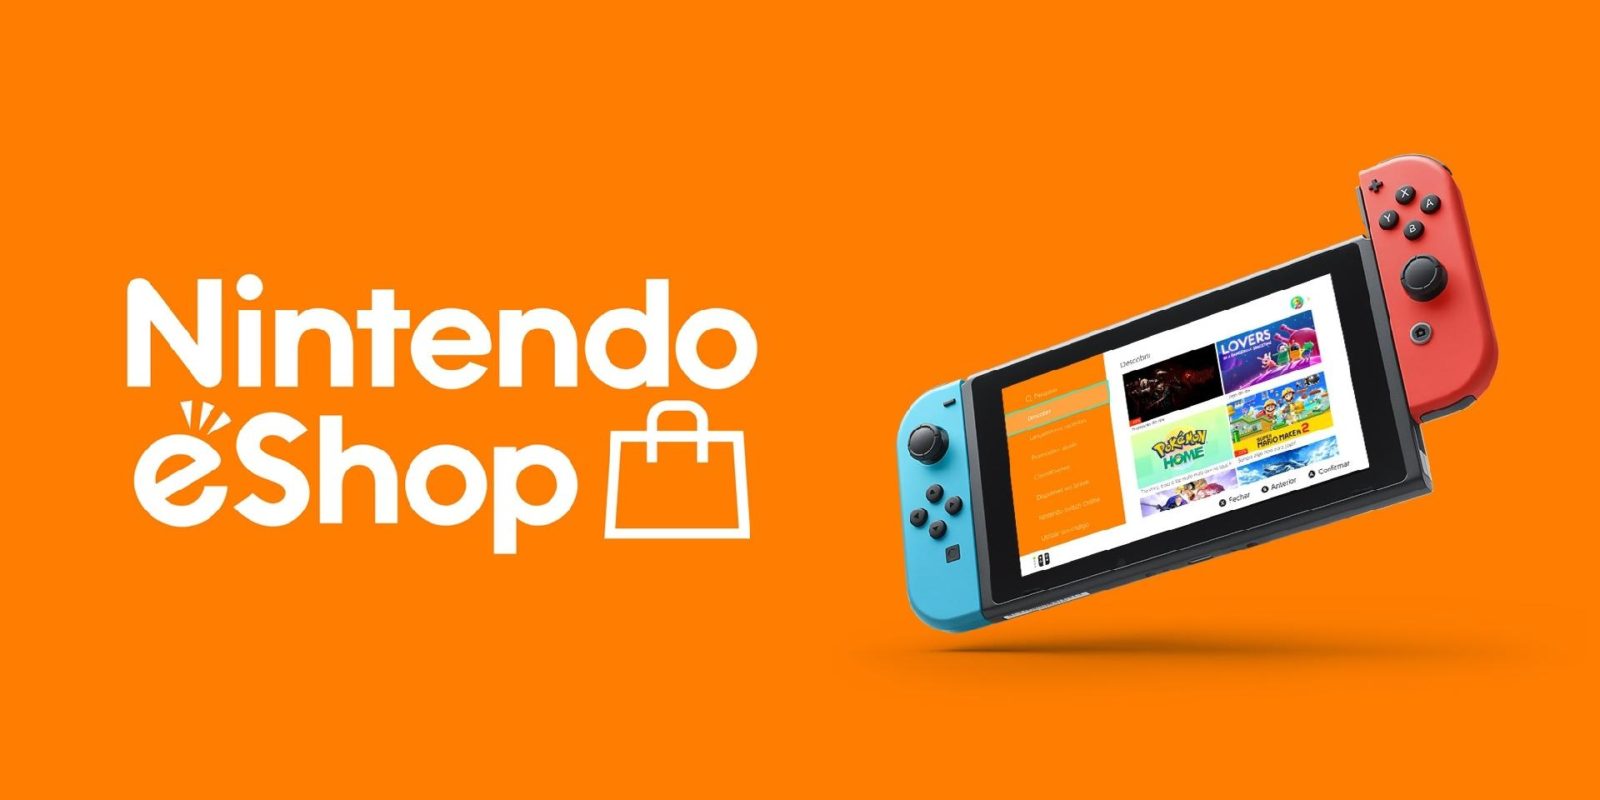 Prime oferece 12 meses grátis de Nintendo Switch Online – Tecnoblog